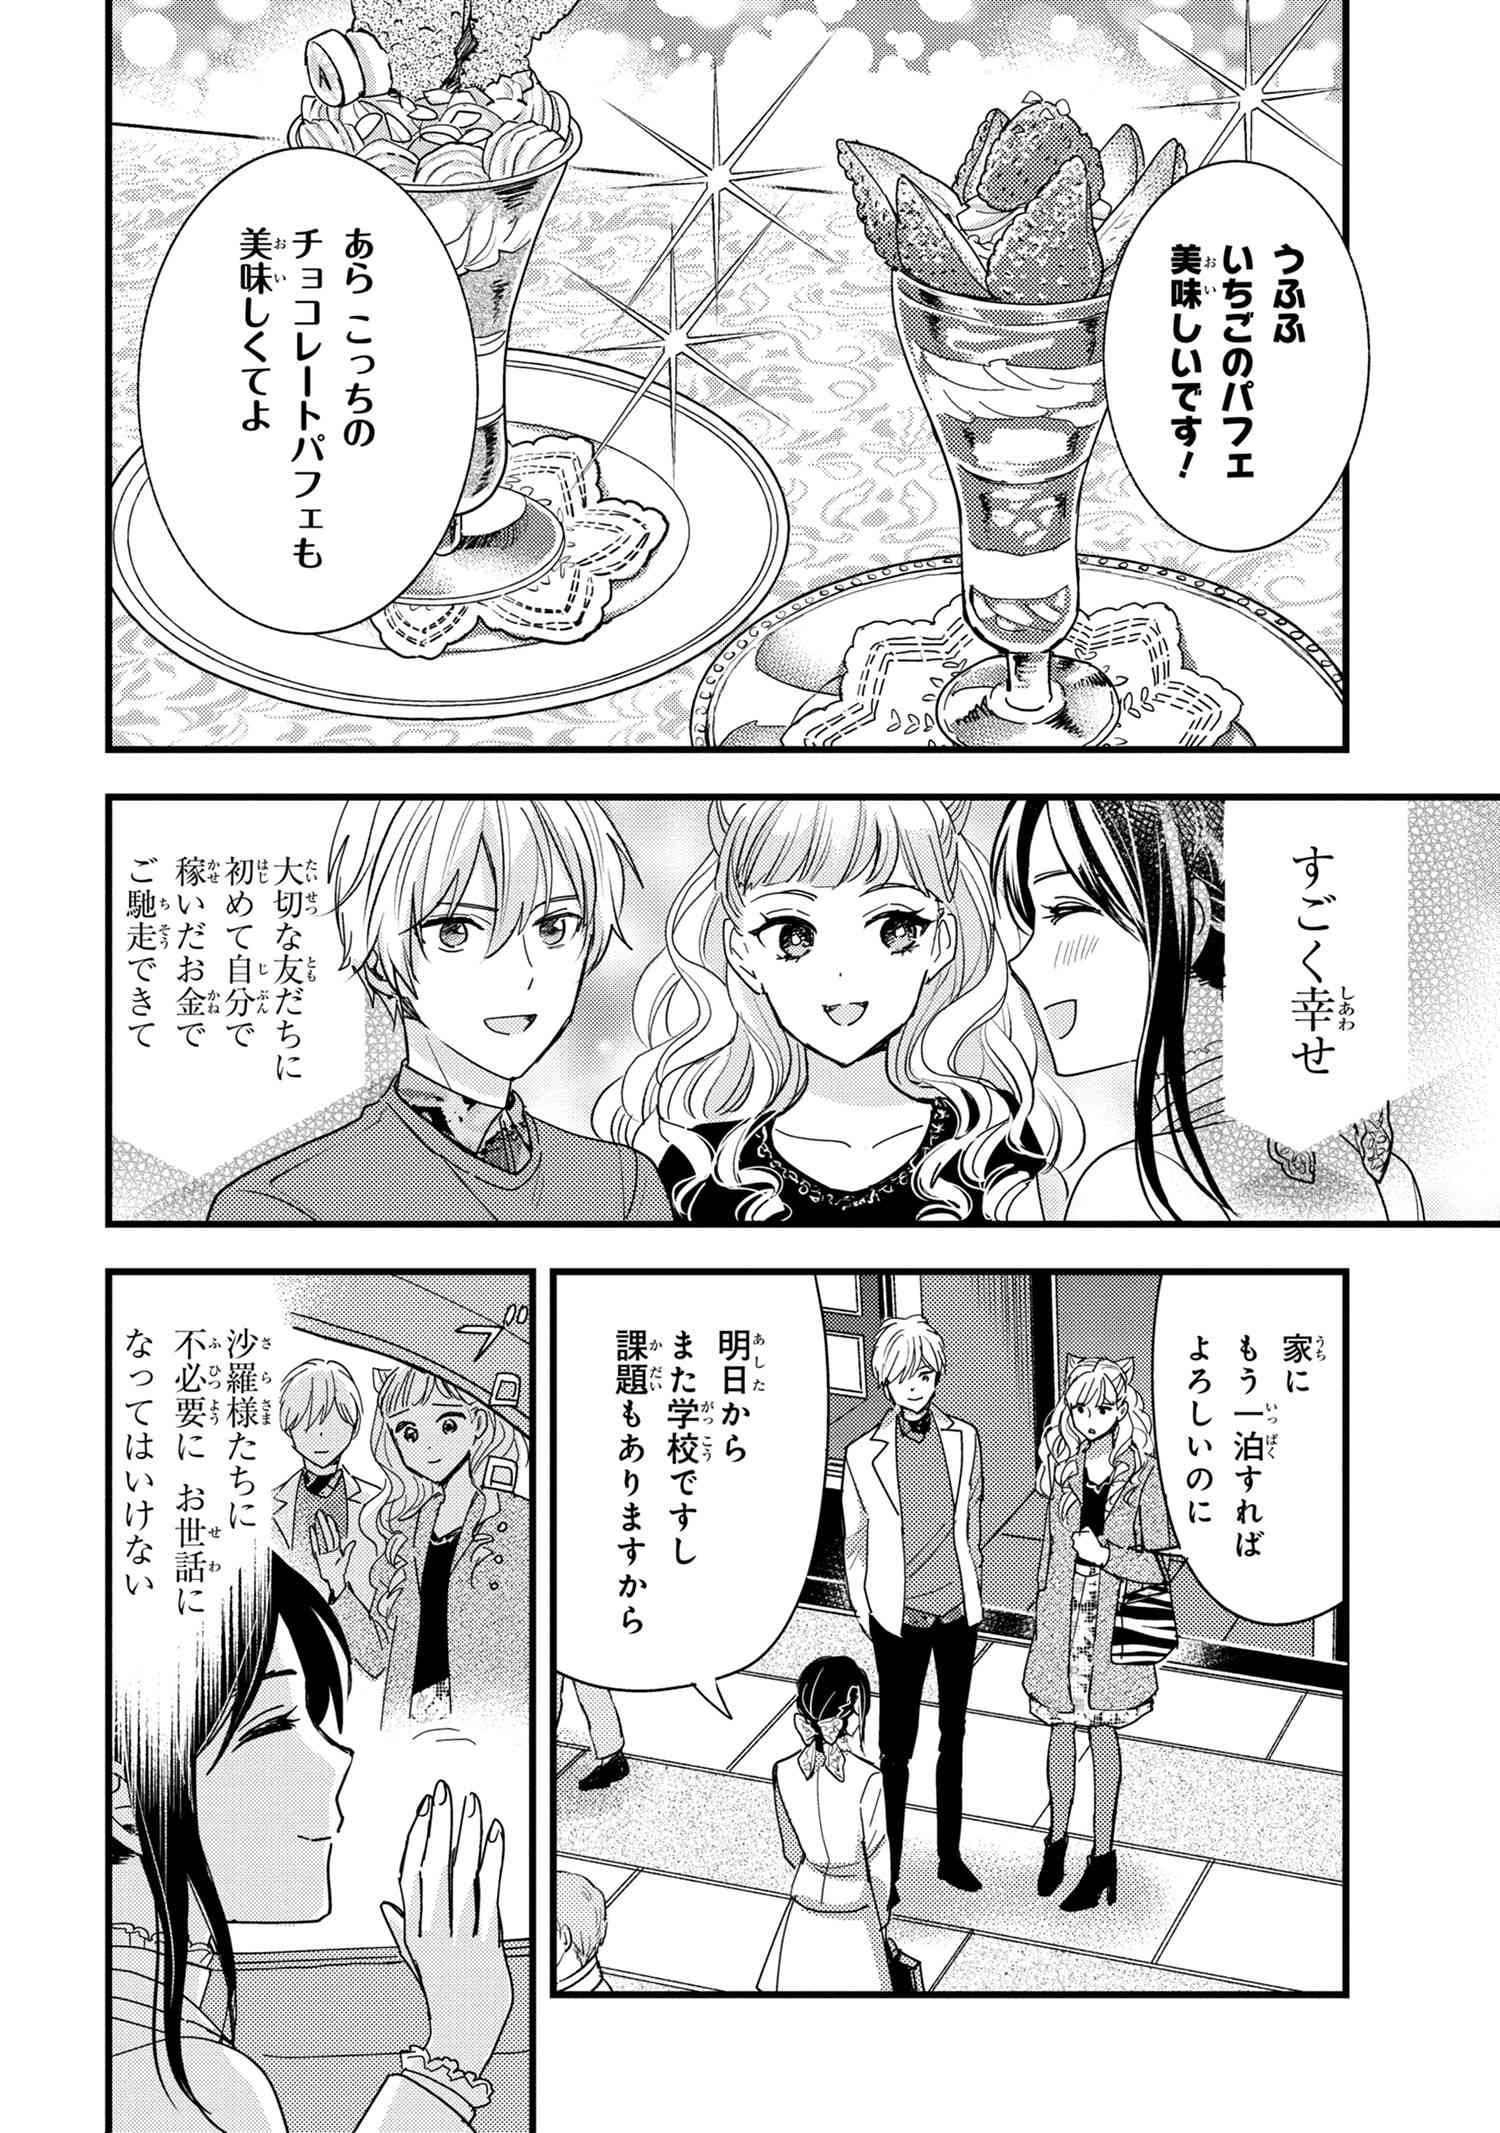 Reiko no Fuugi Akuyaku Reijou to Yobarete imasu ga, tada no Binbou Musume desu - Chapter 15-3 - Page 2